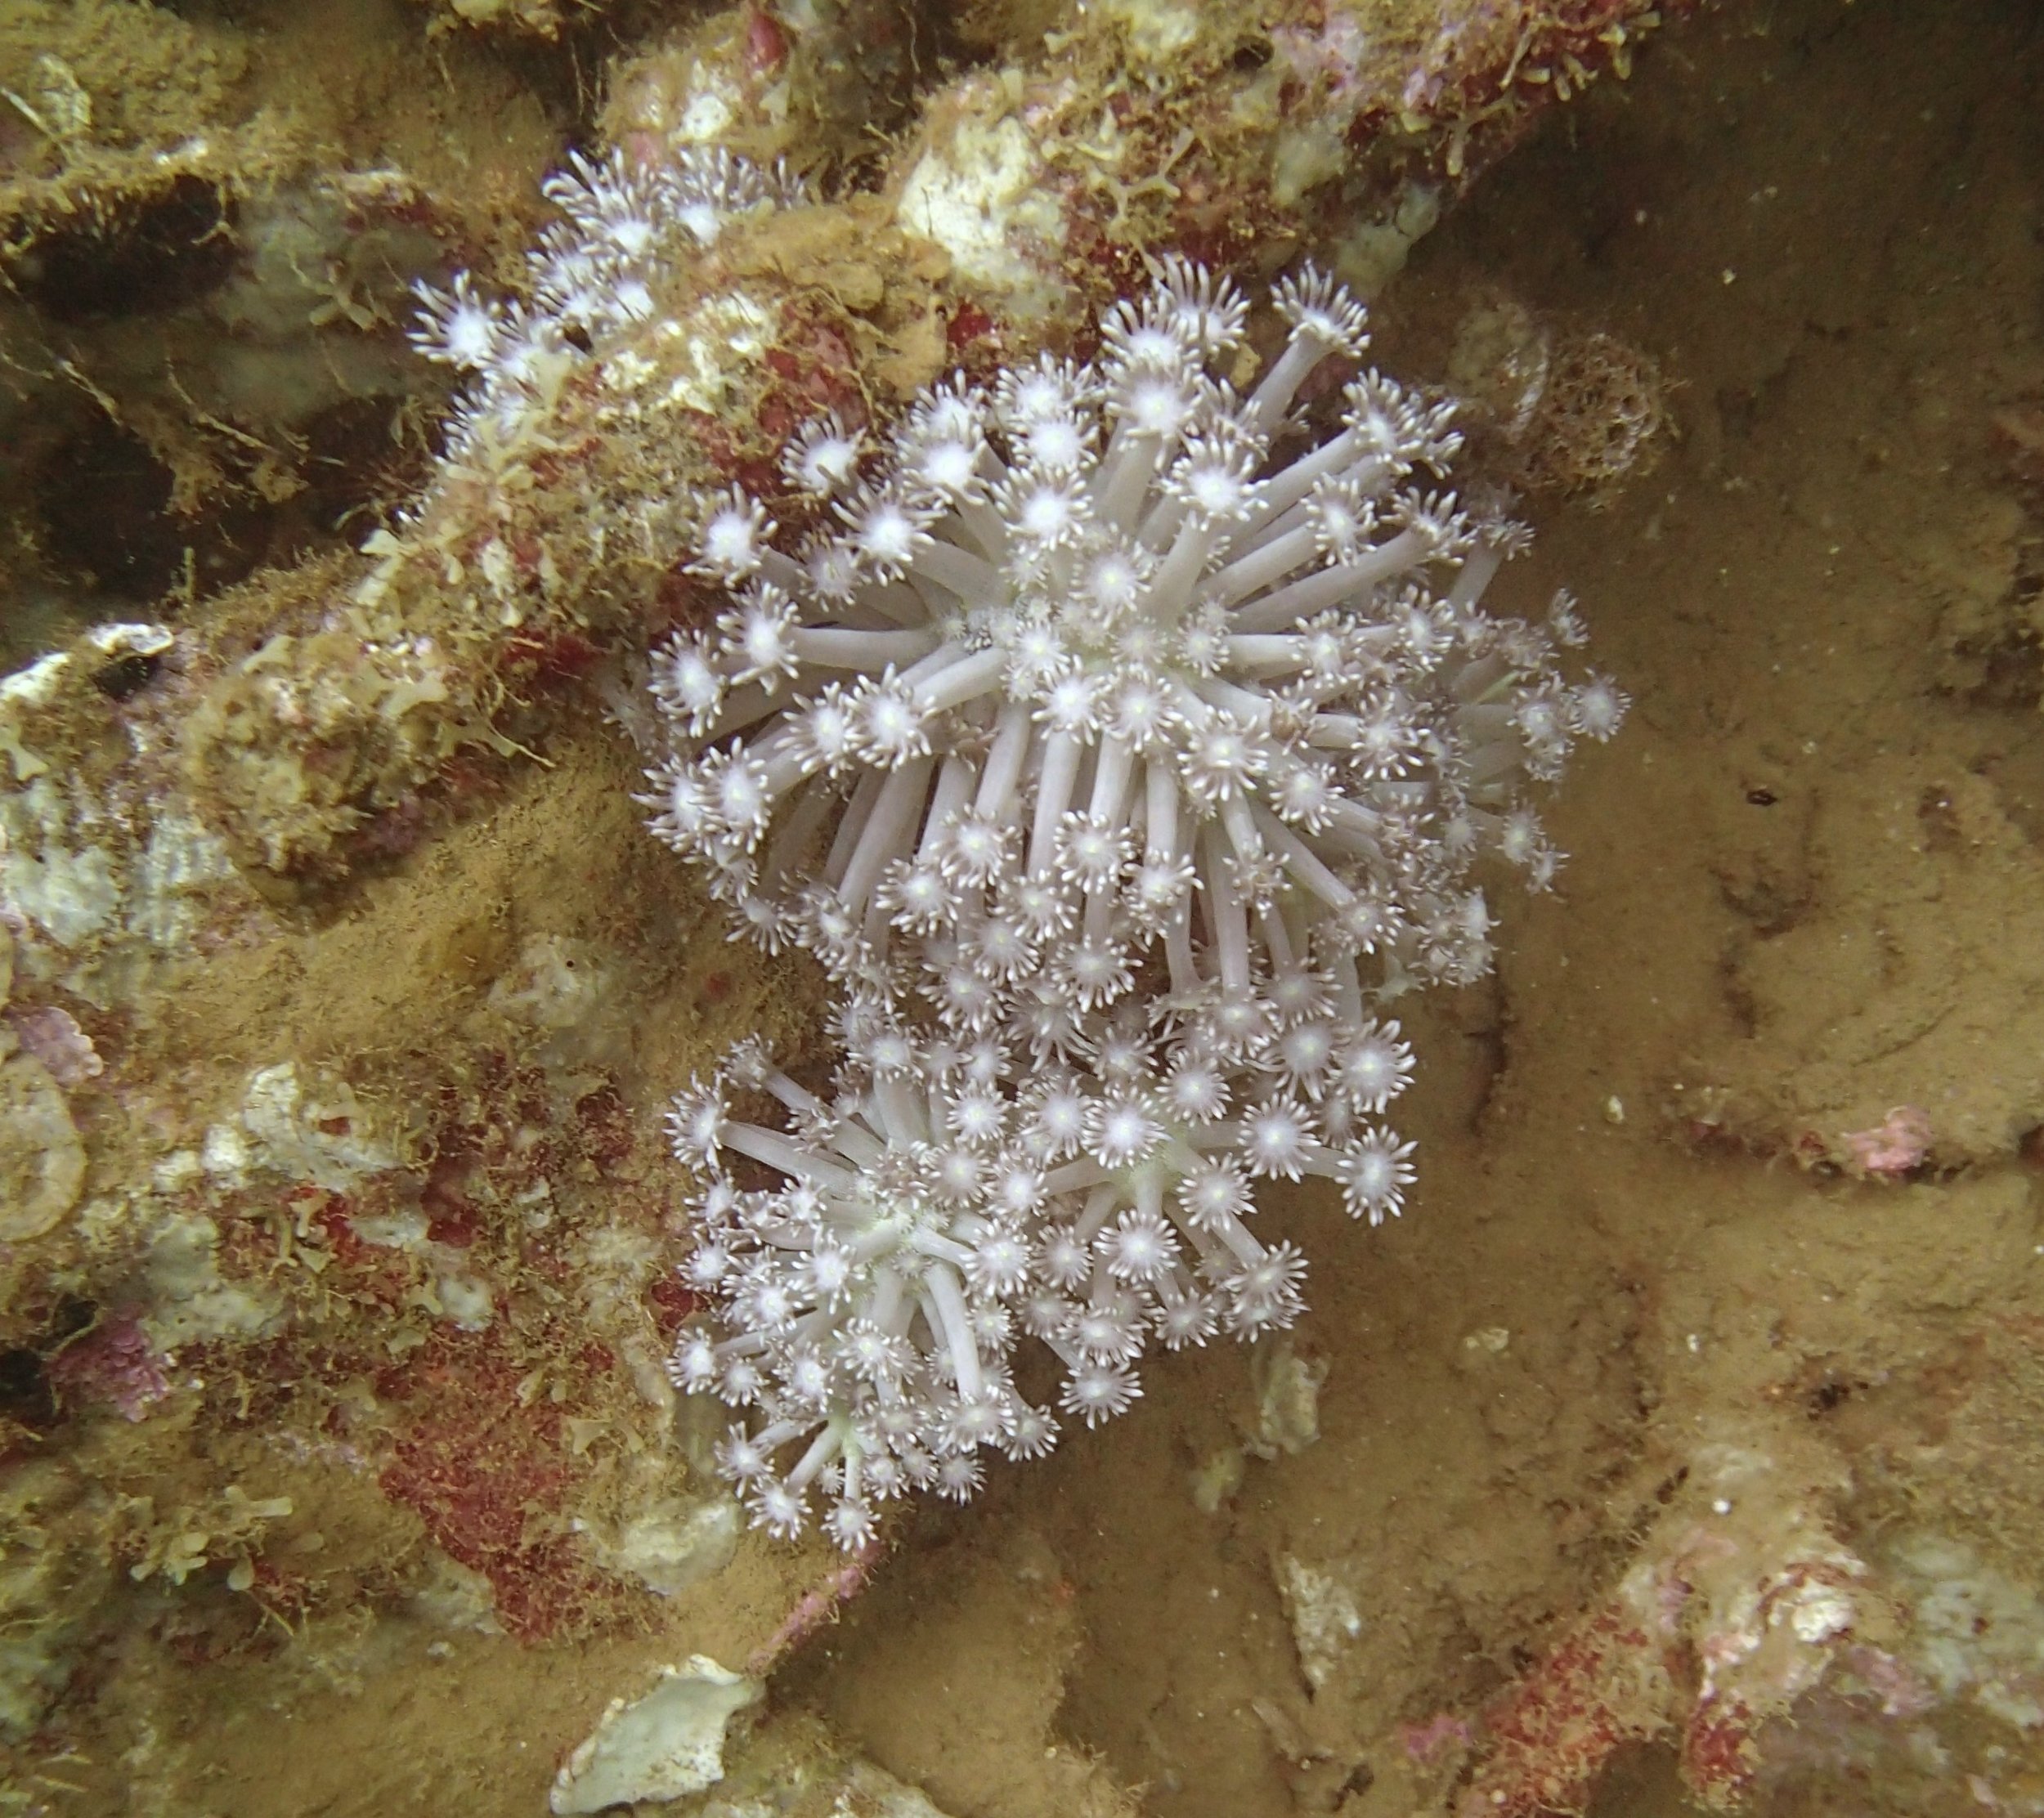 soft coral NCPB22.jpg